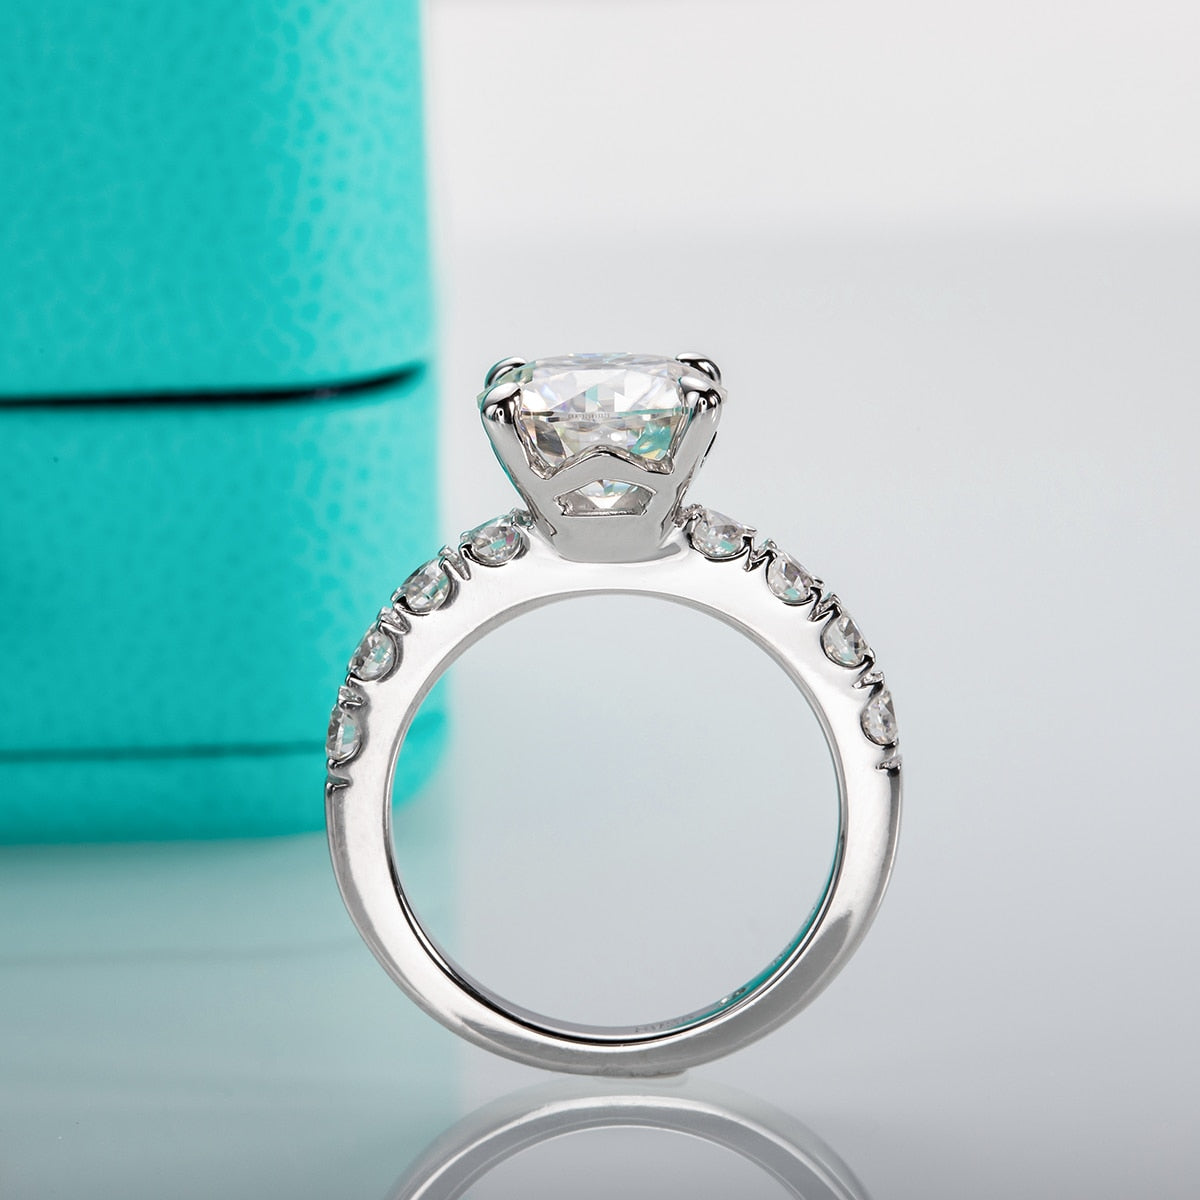 4.3cttw Moissanite Diamond 925 Sterling Silver Engagement Ring UK